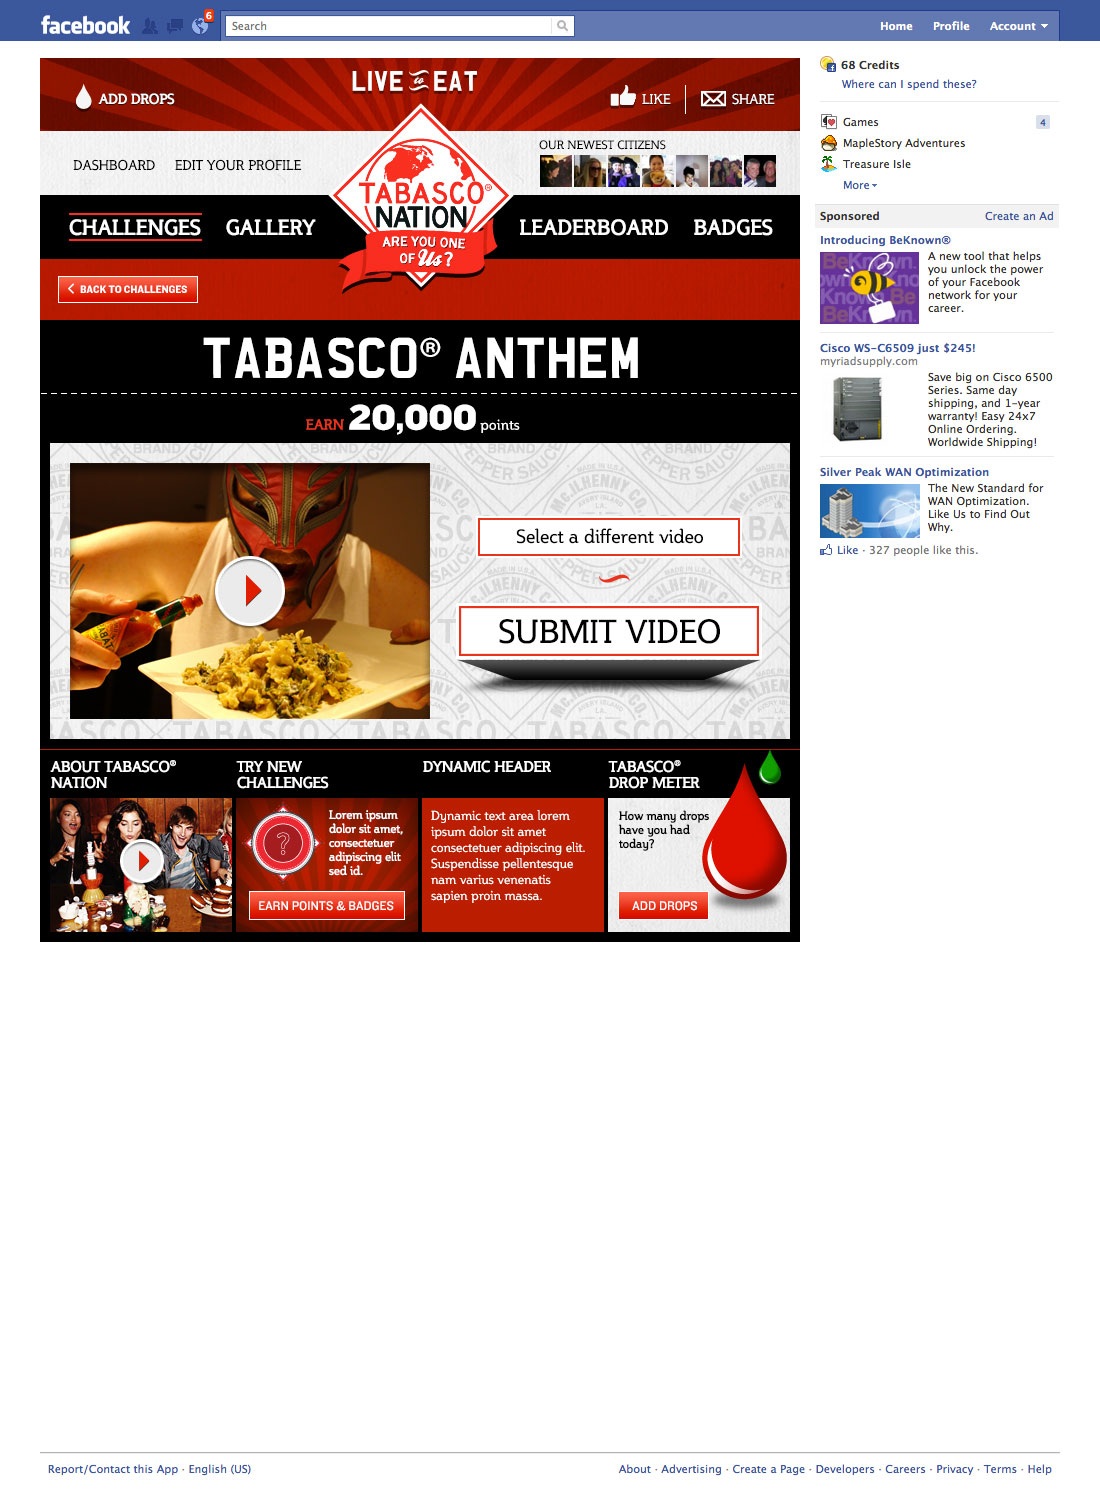 tabasco-fb-TN-app-9